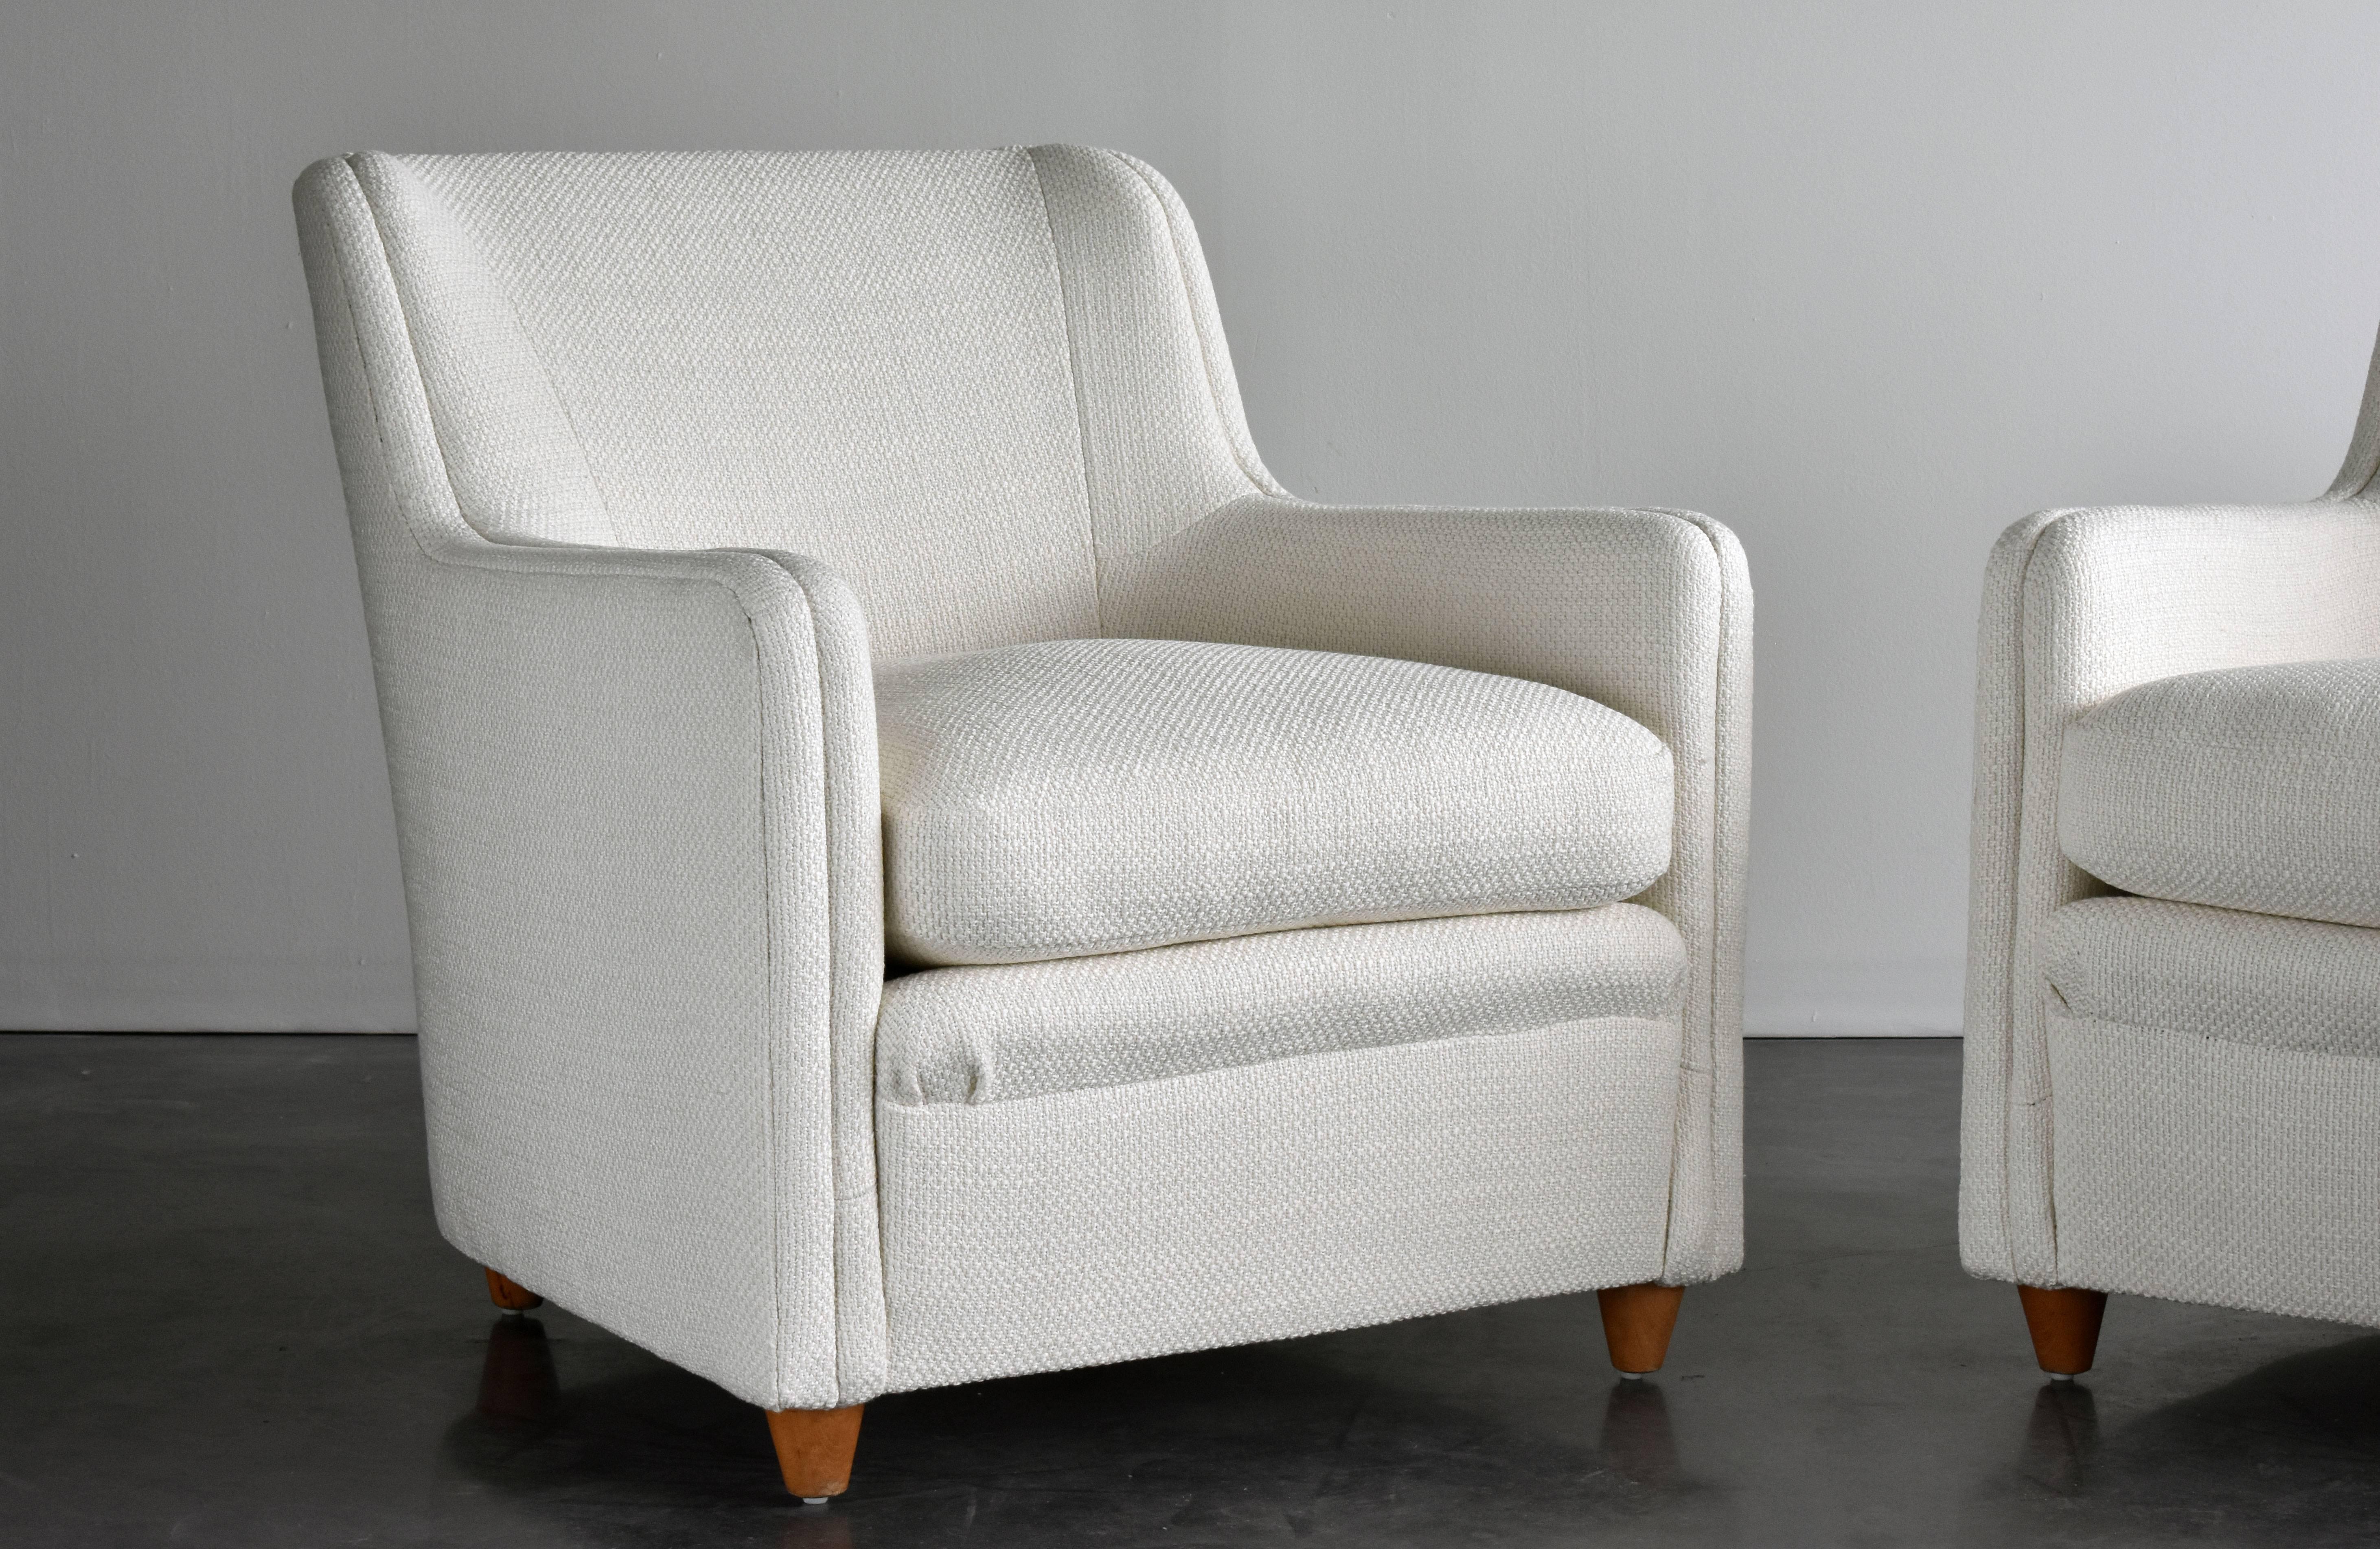 Chenille Gio Ponti, White Lounge Chairs from Transatlantico Conte Grande, 1940s Italian